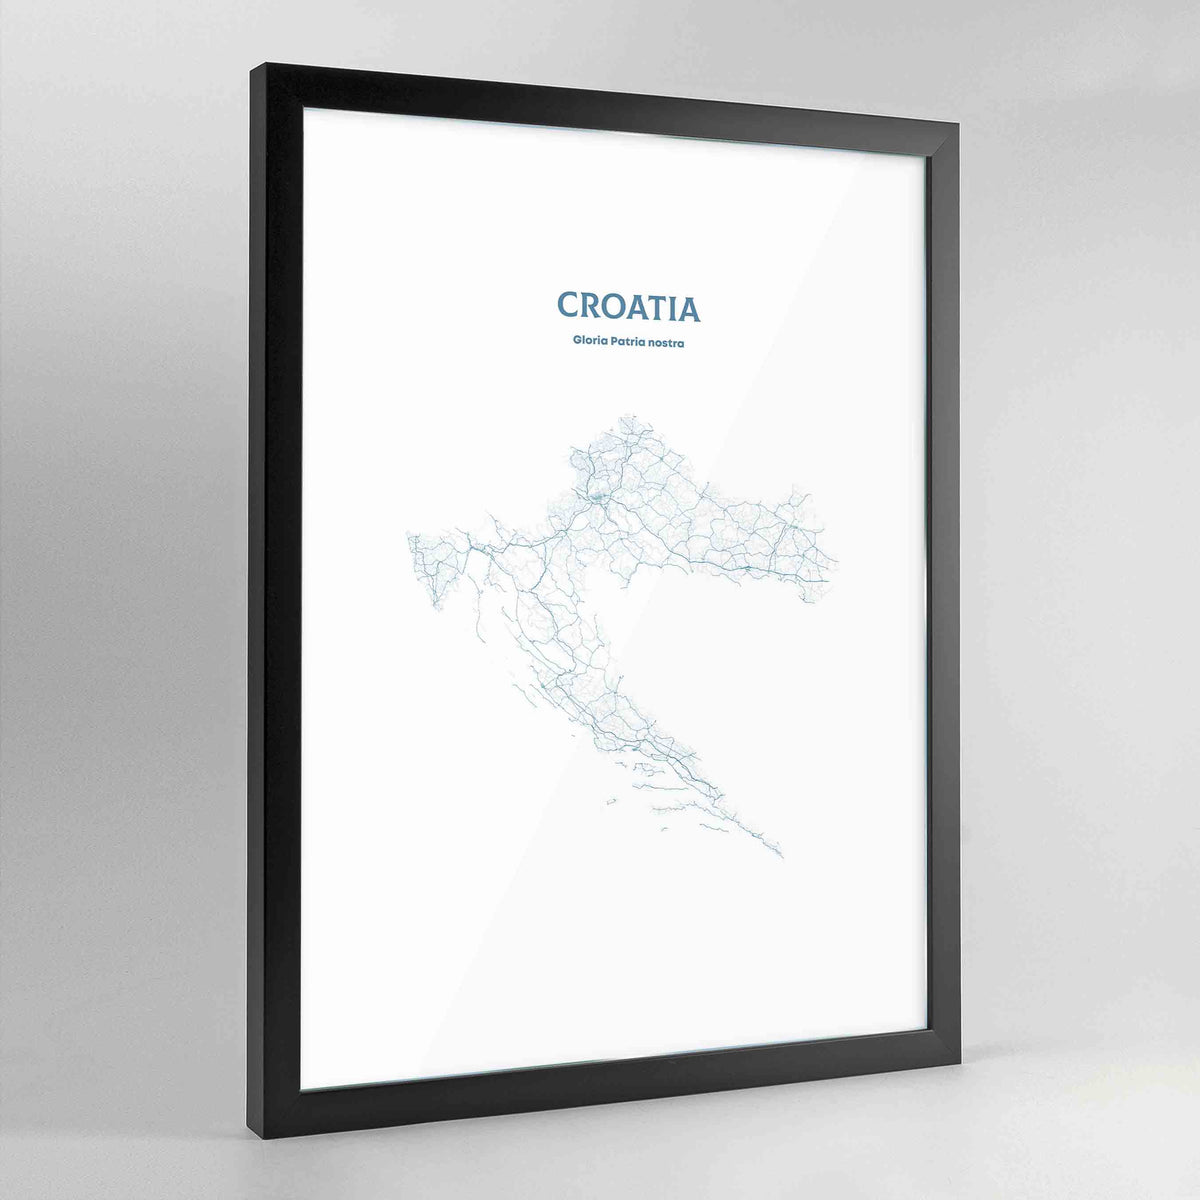 Croatia - All Roads Art Print - Framed